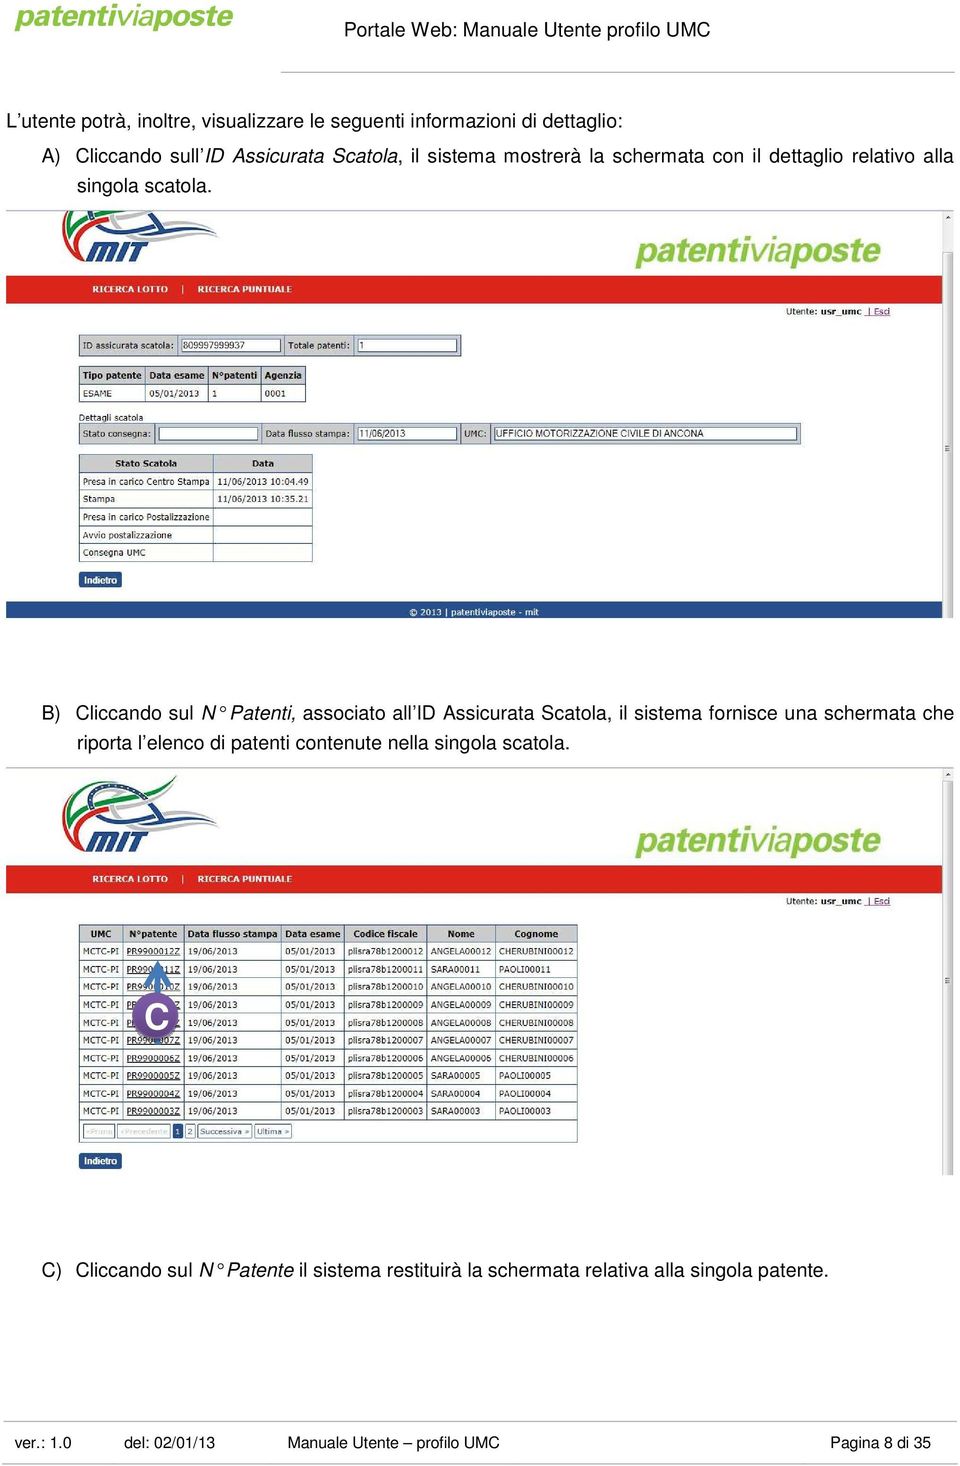 B) Cliccando sul N Patenti, associato all ID Assicurata Scatola, il sistema fornisce una schermata che riporta l elenco di patenti